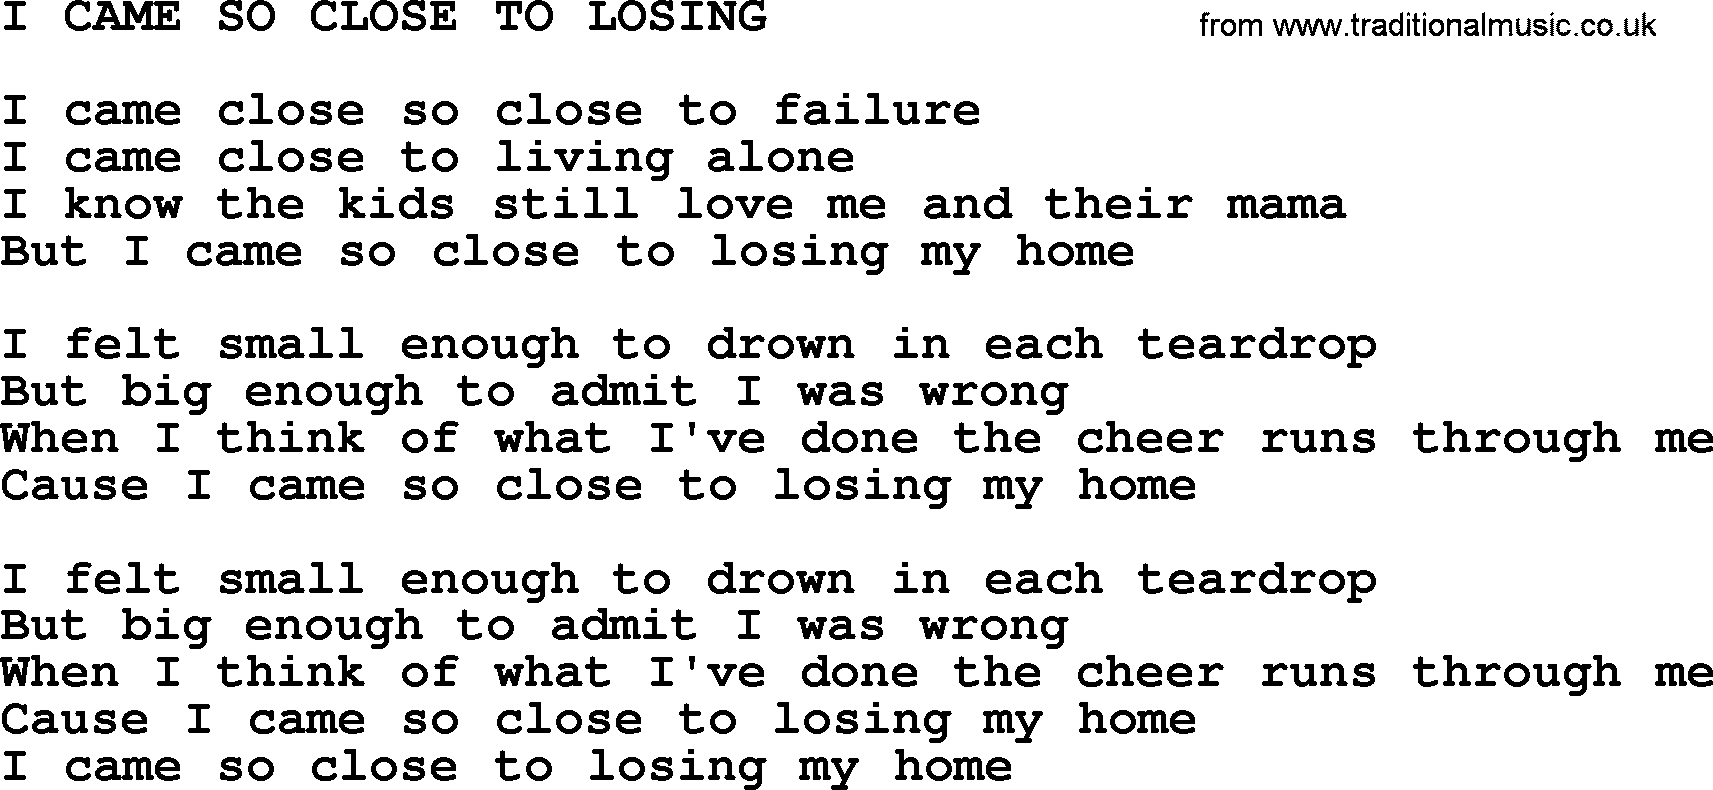 Merle Haggard song: I Came So Close To Losing, lyrics.